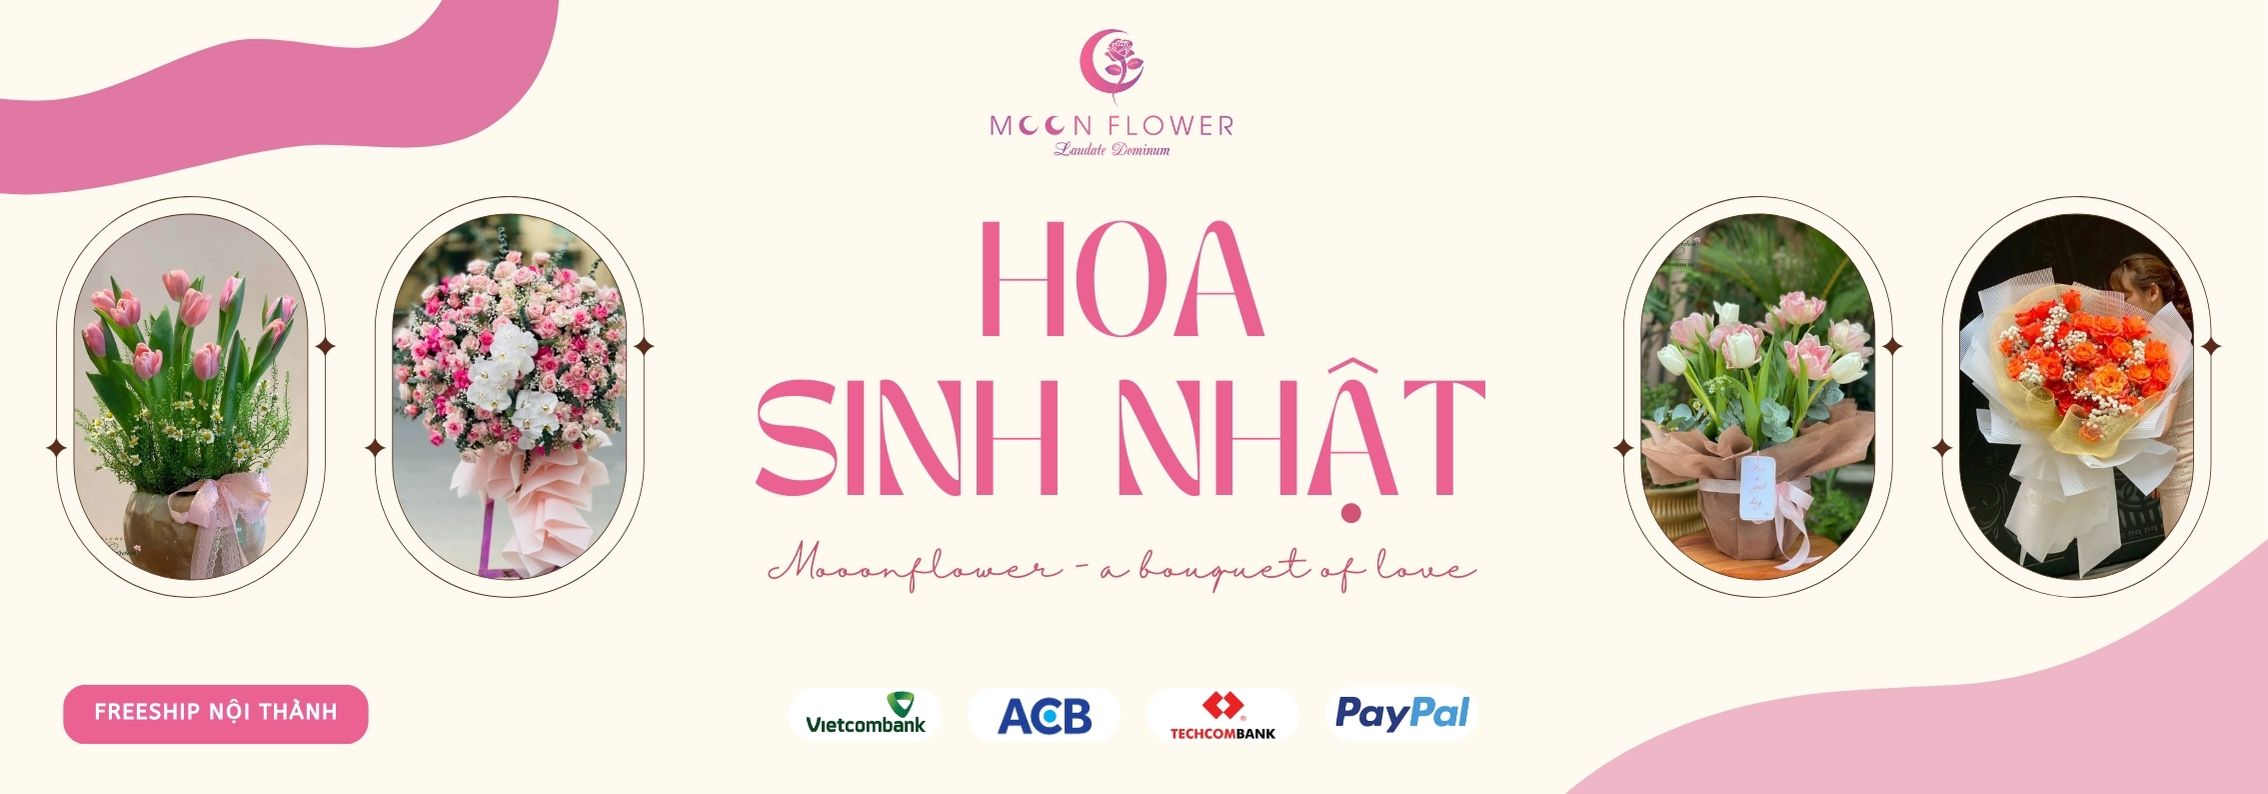 banner-dien-hoa-moonflower